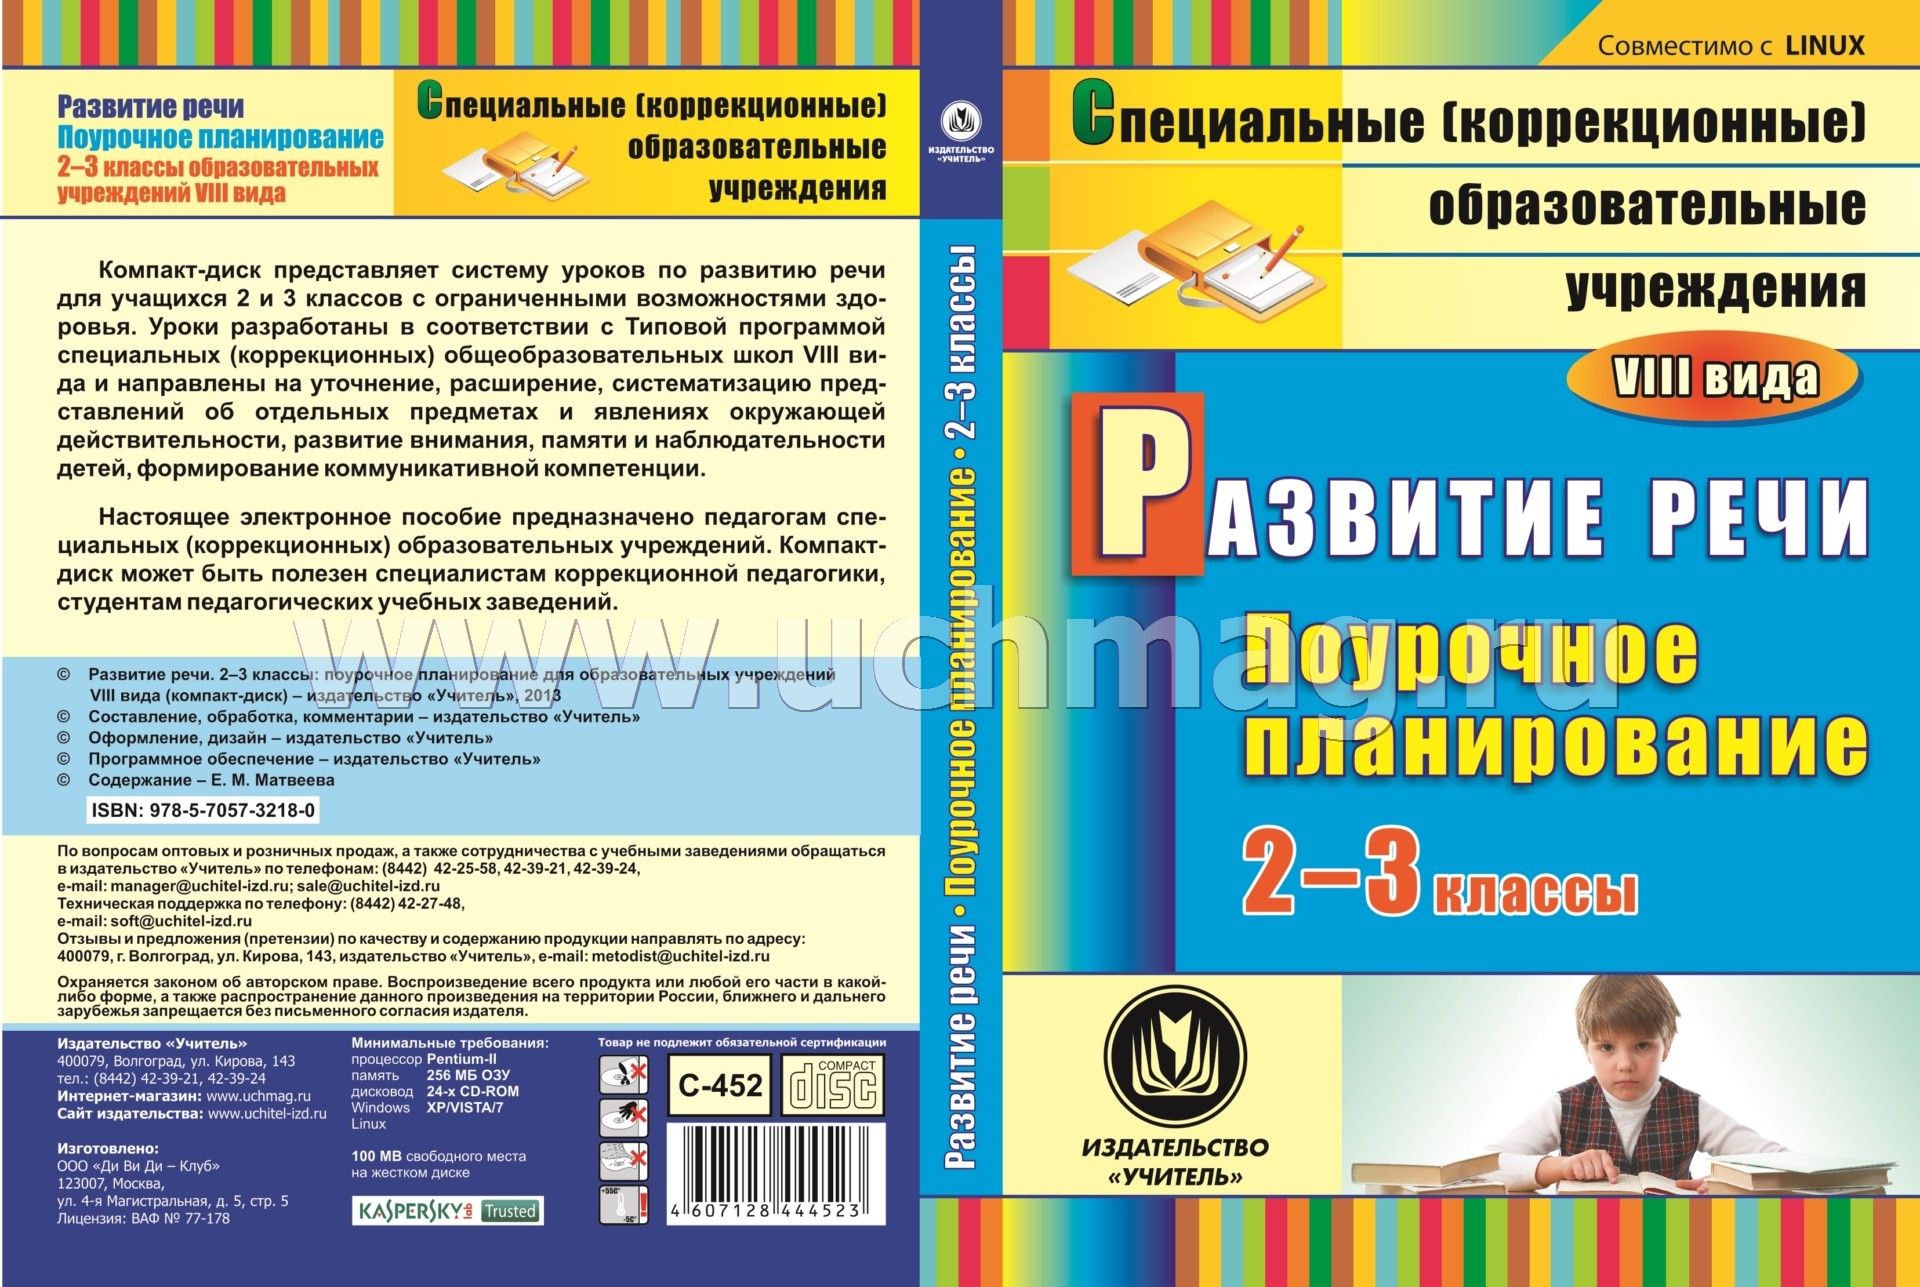 Ктп 2 класс 8 вида индивидуальное домашнее обучение русский язык